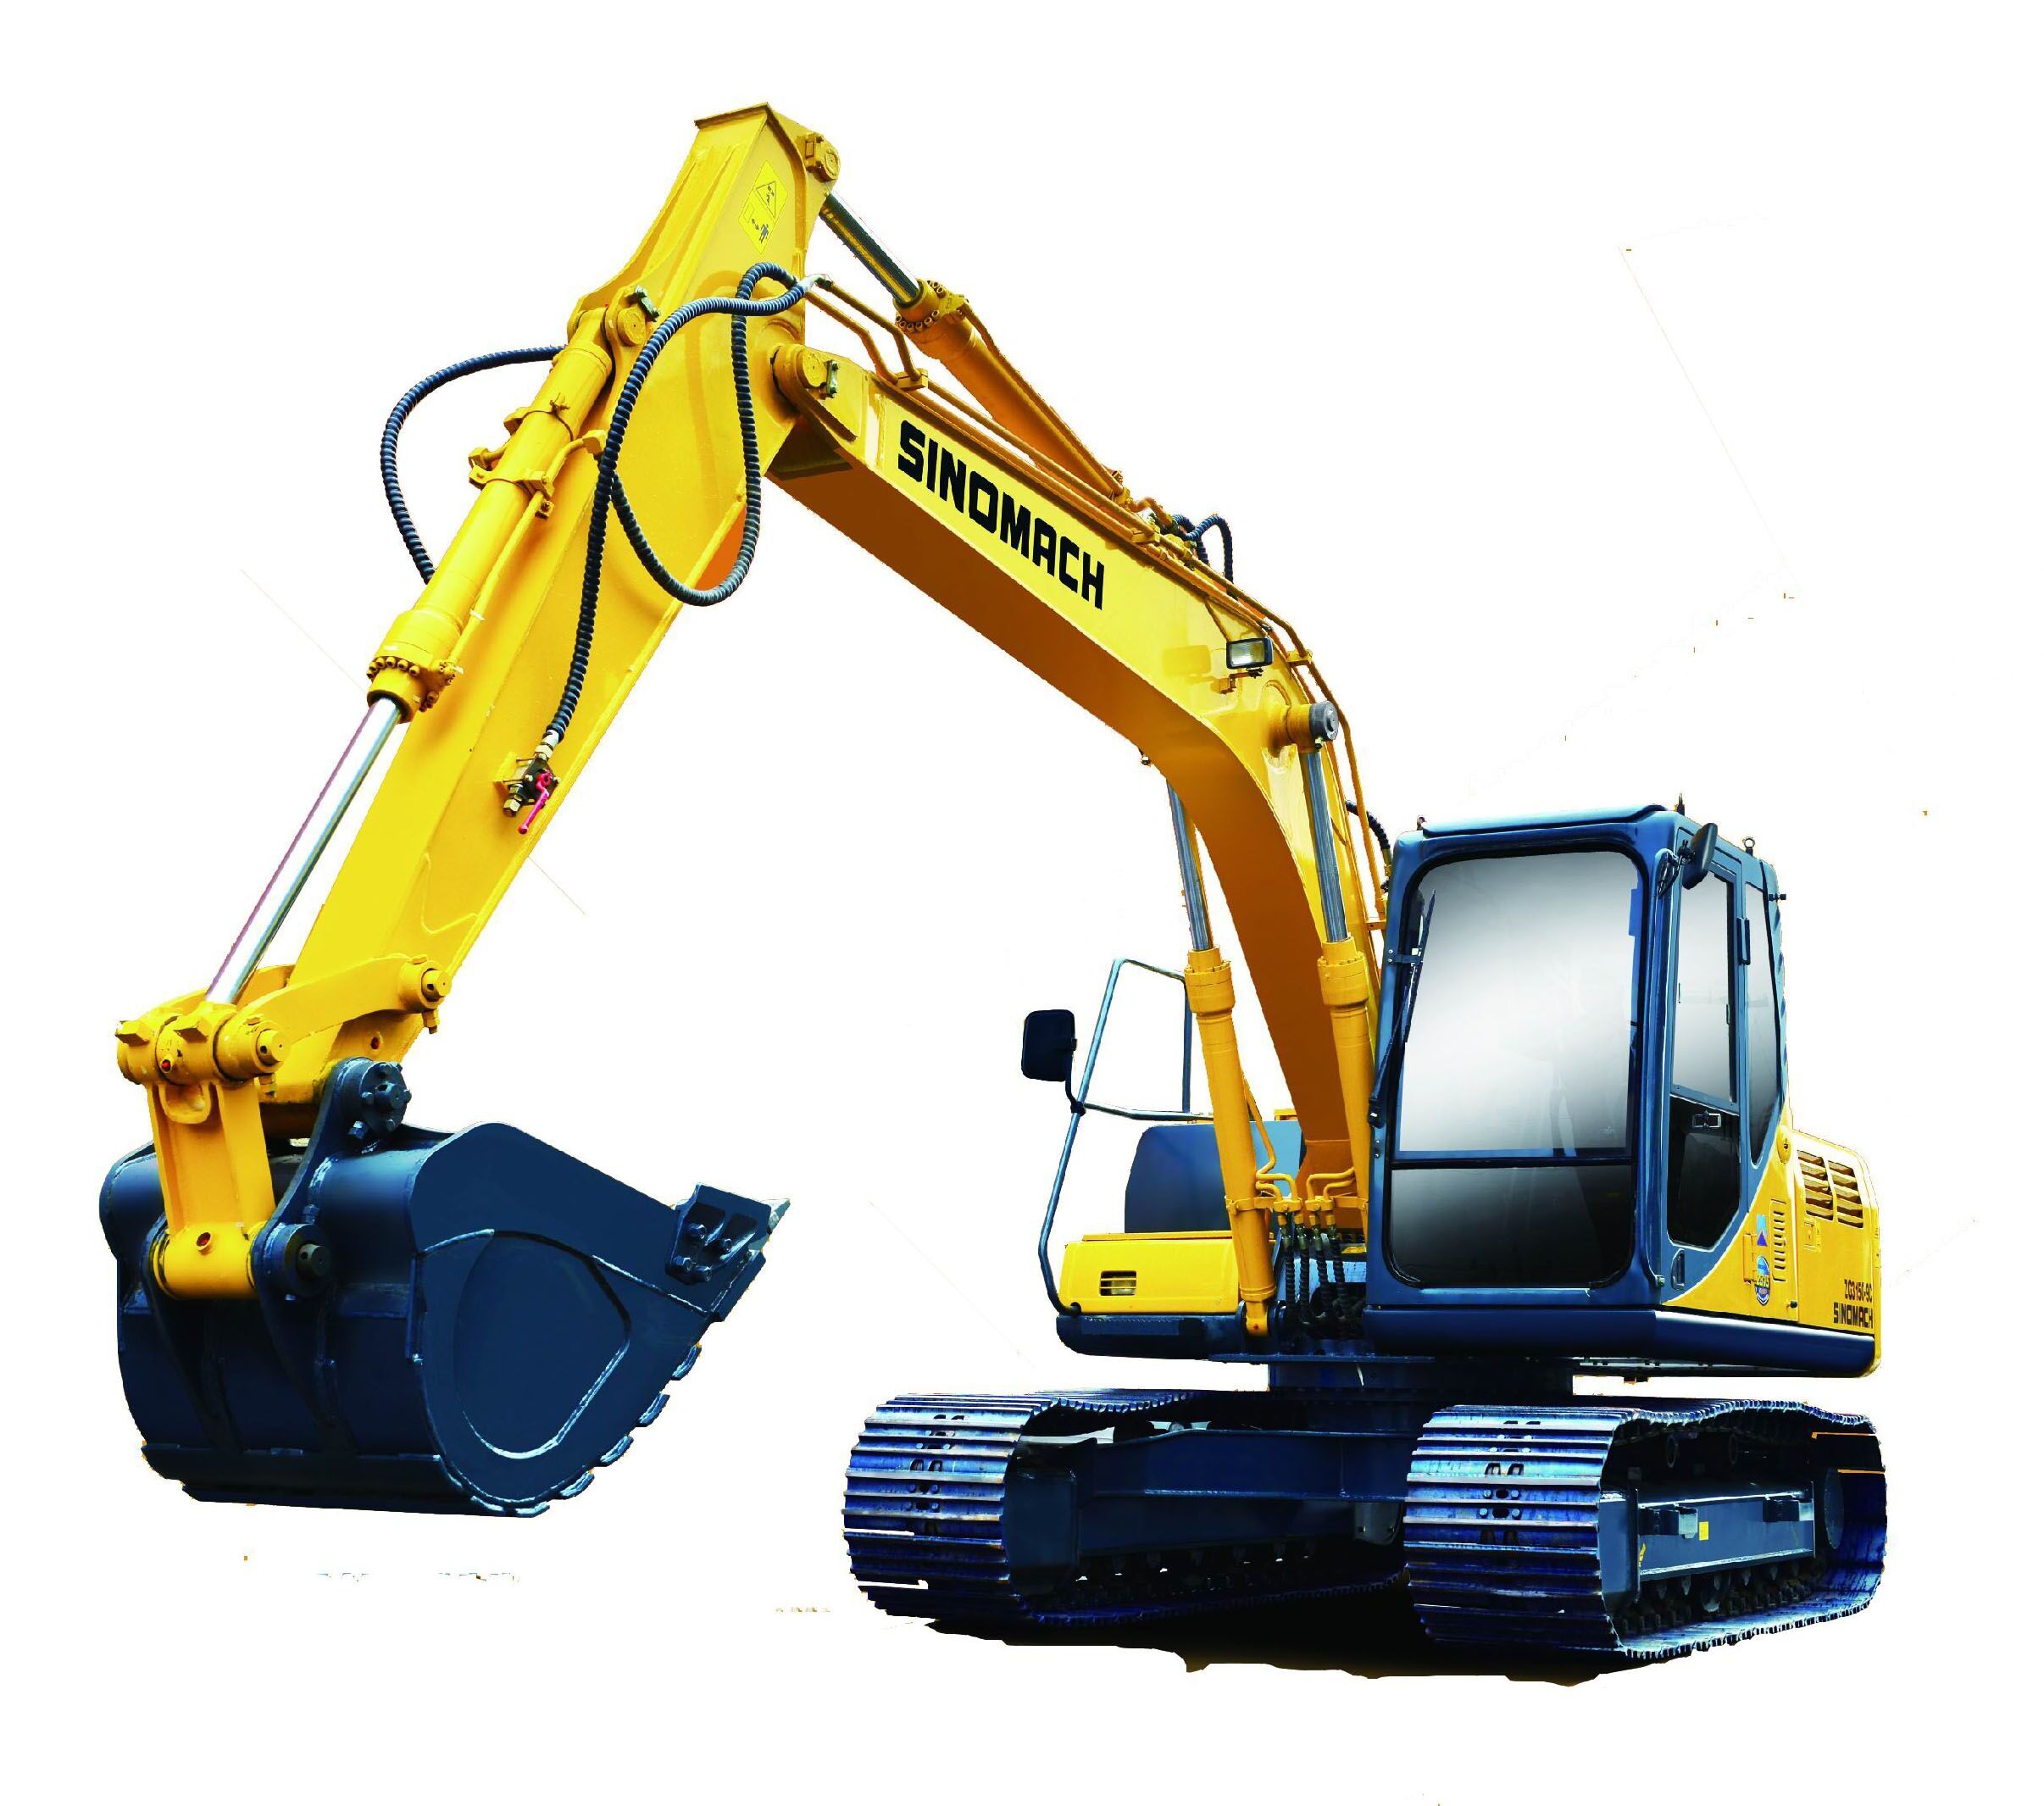 中联重科挖掘机ZE480E产品高清图-工程机械在线